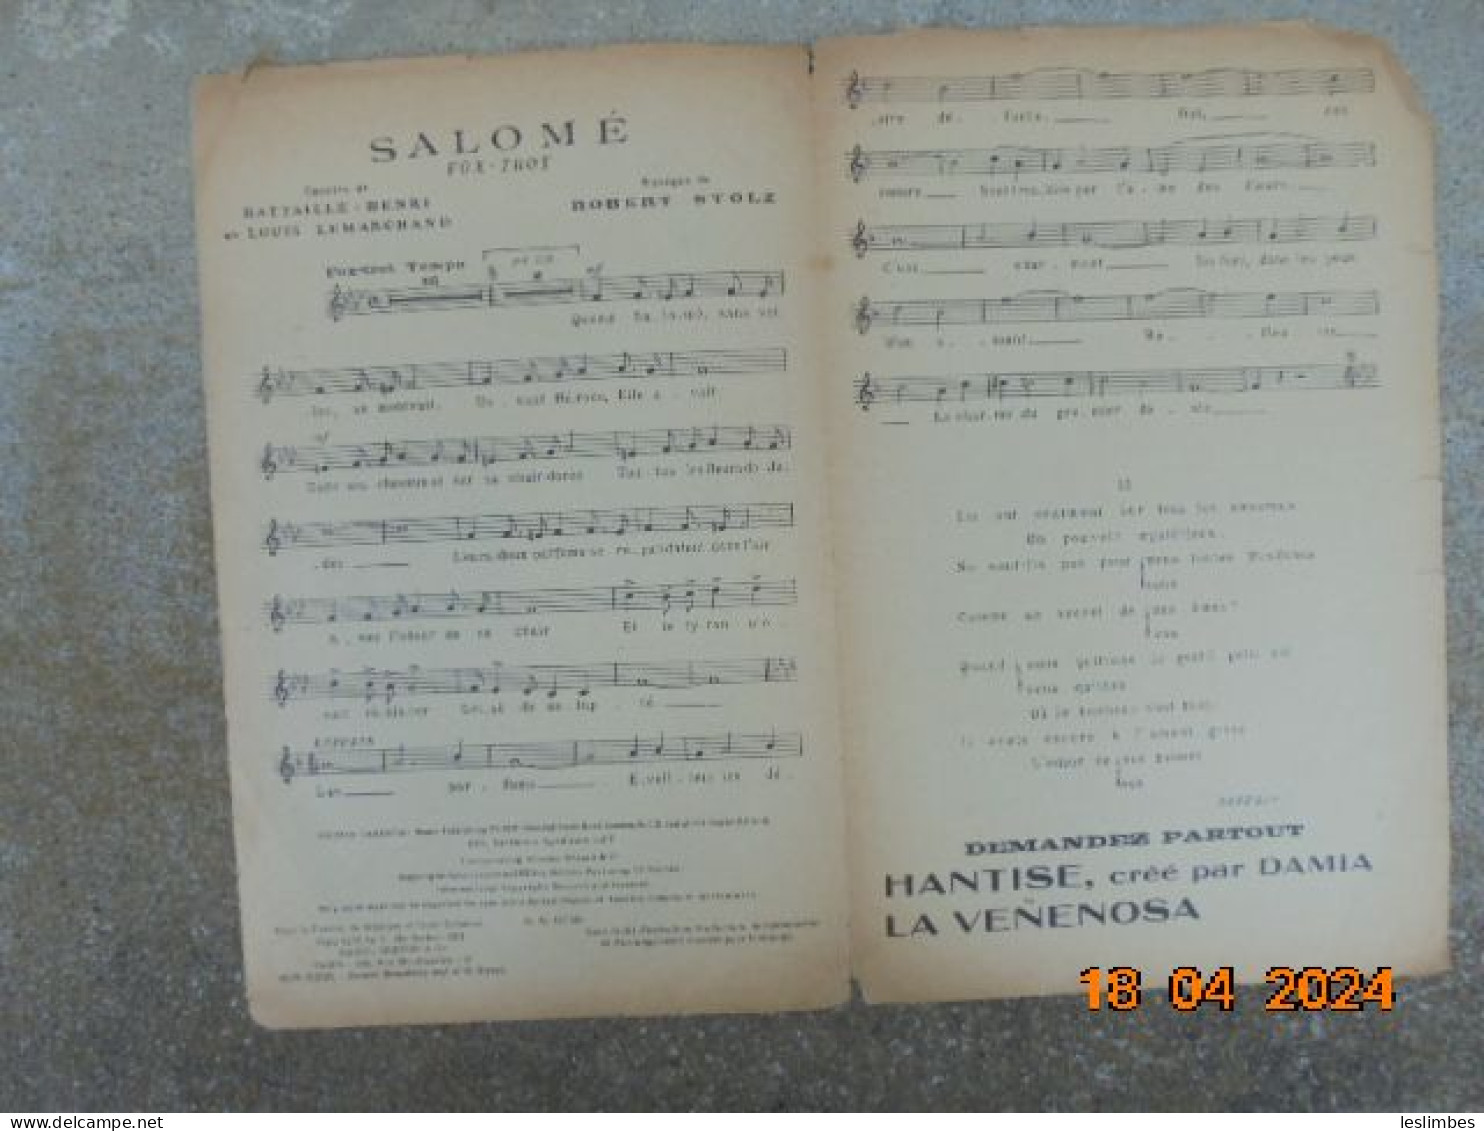 Salome [partition] Fox-Trot - Battaille Henri, Robert Stolz - Raoul Breton & Cie - Noten & Partituren